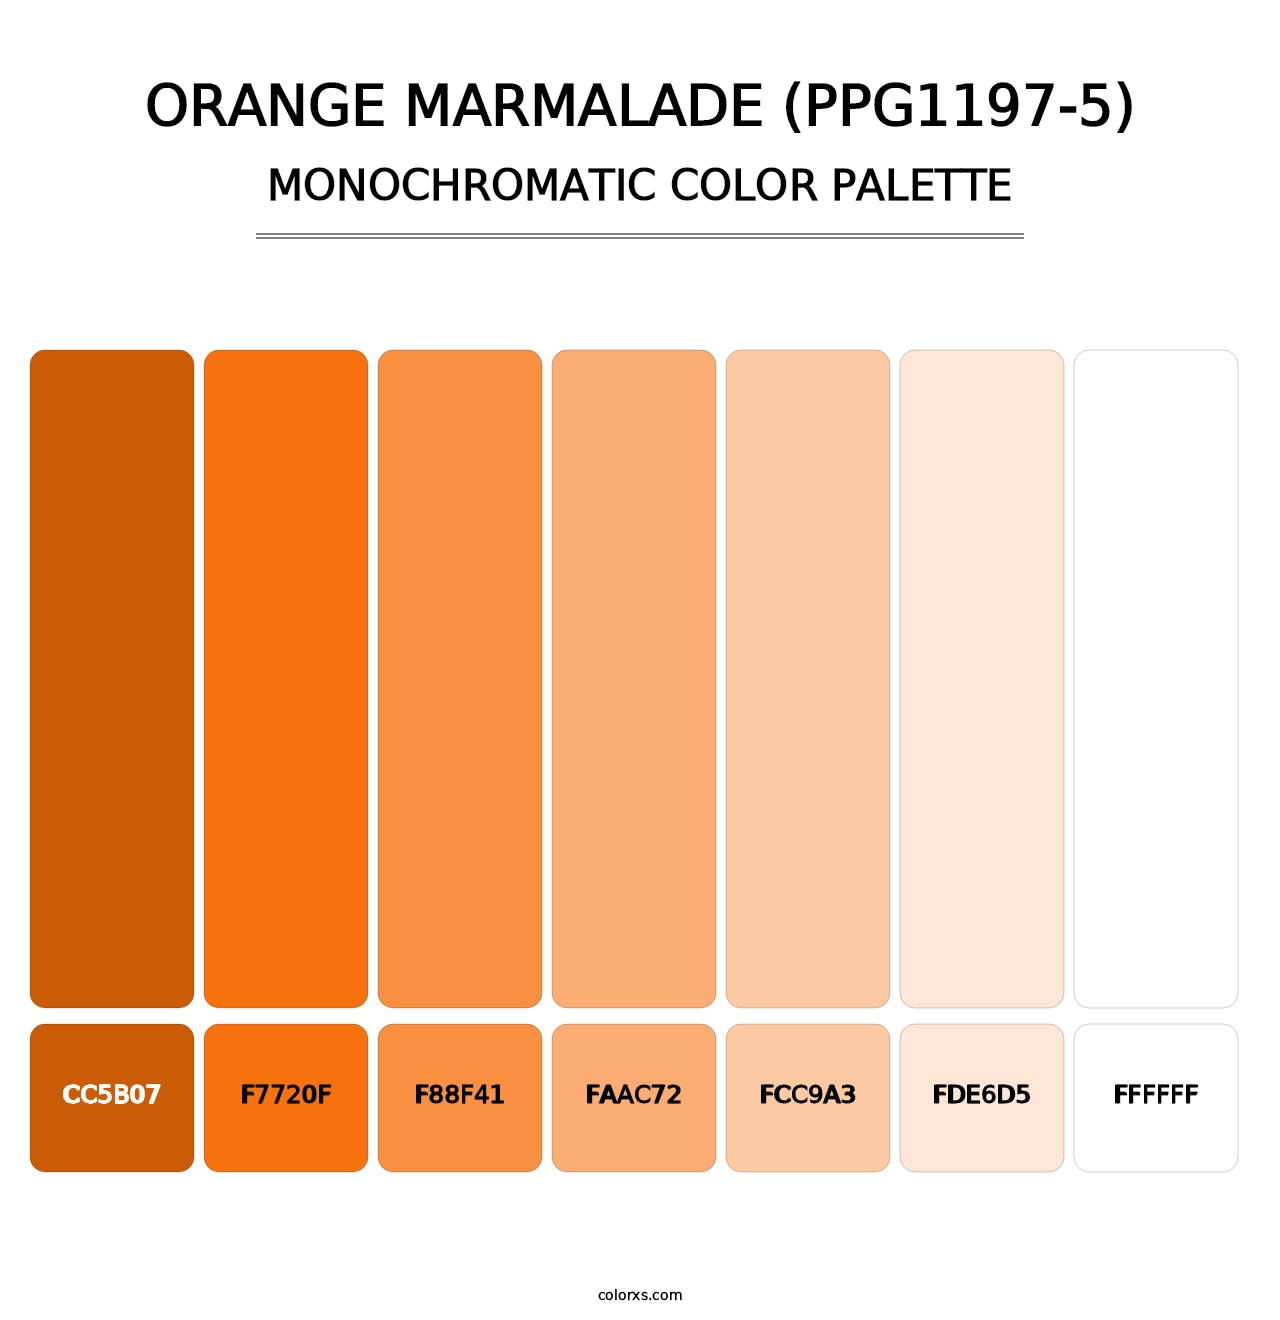 Orange Marmalade (PPG1197-5) - Monochromatic Color Palette